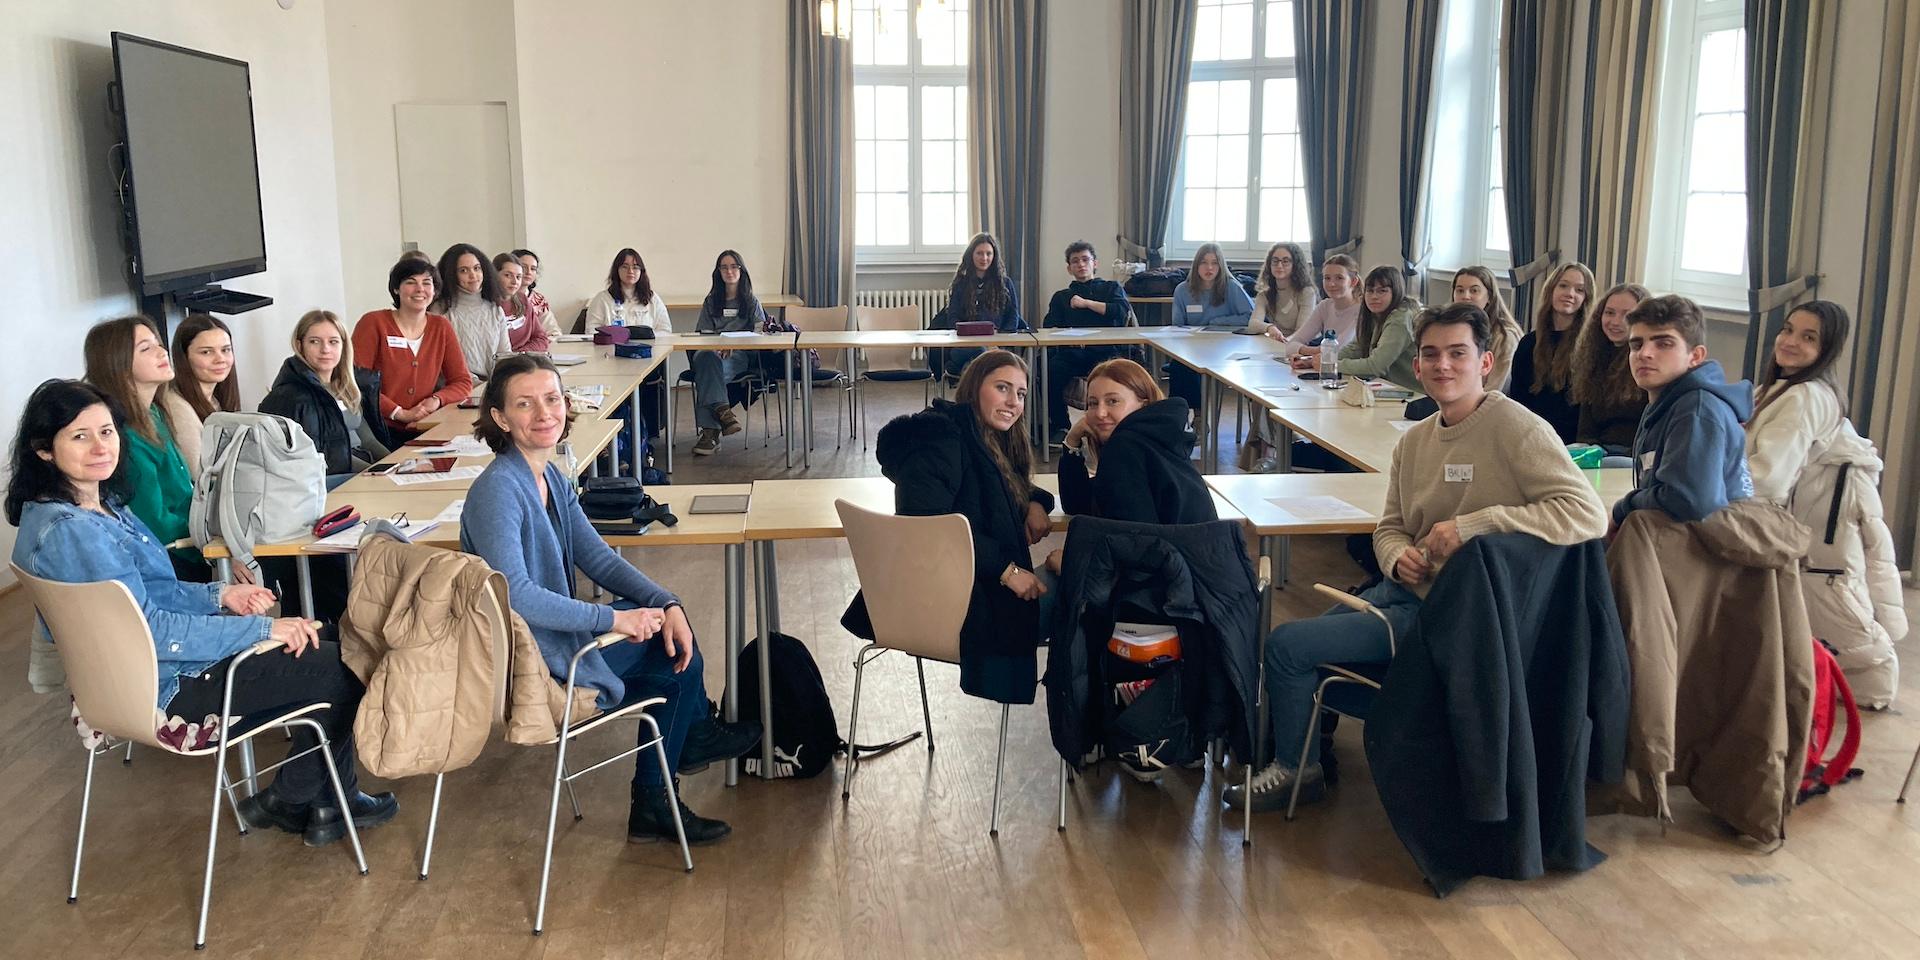 Ungarische und deutsche Schüler:innen sitzen an Tischen in einem Saal